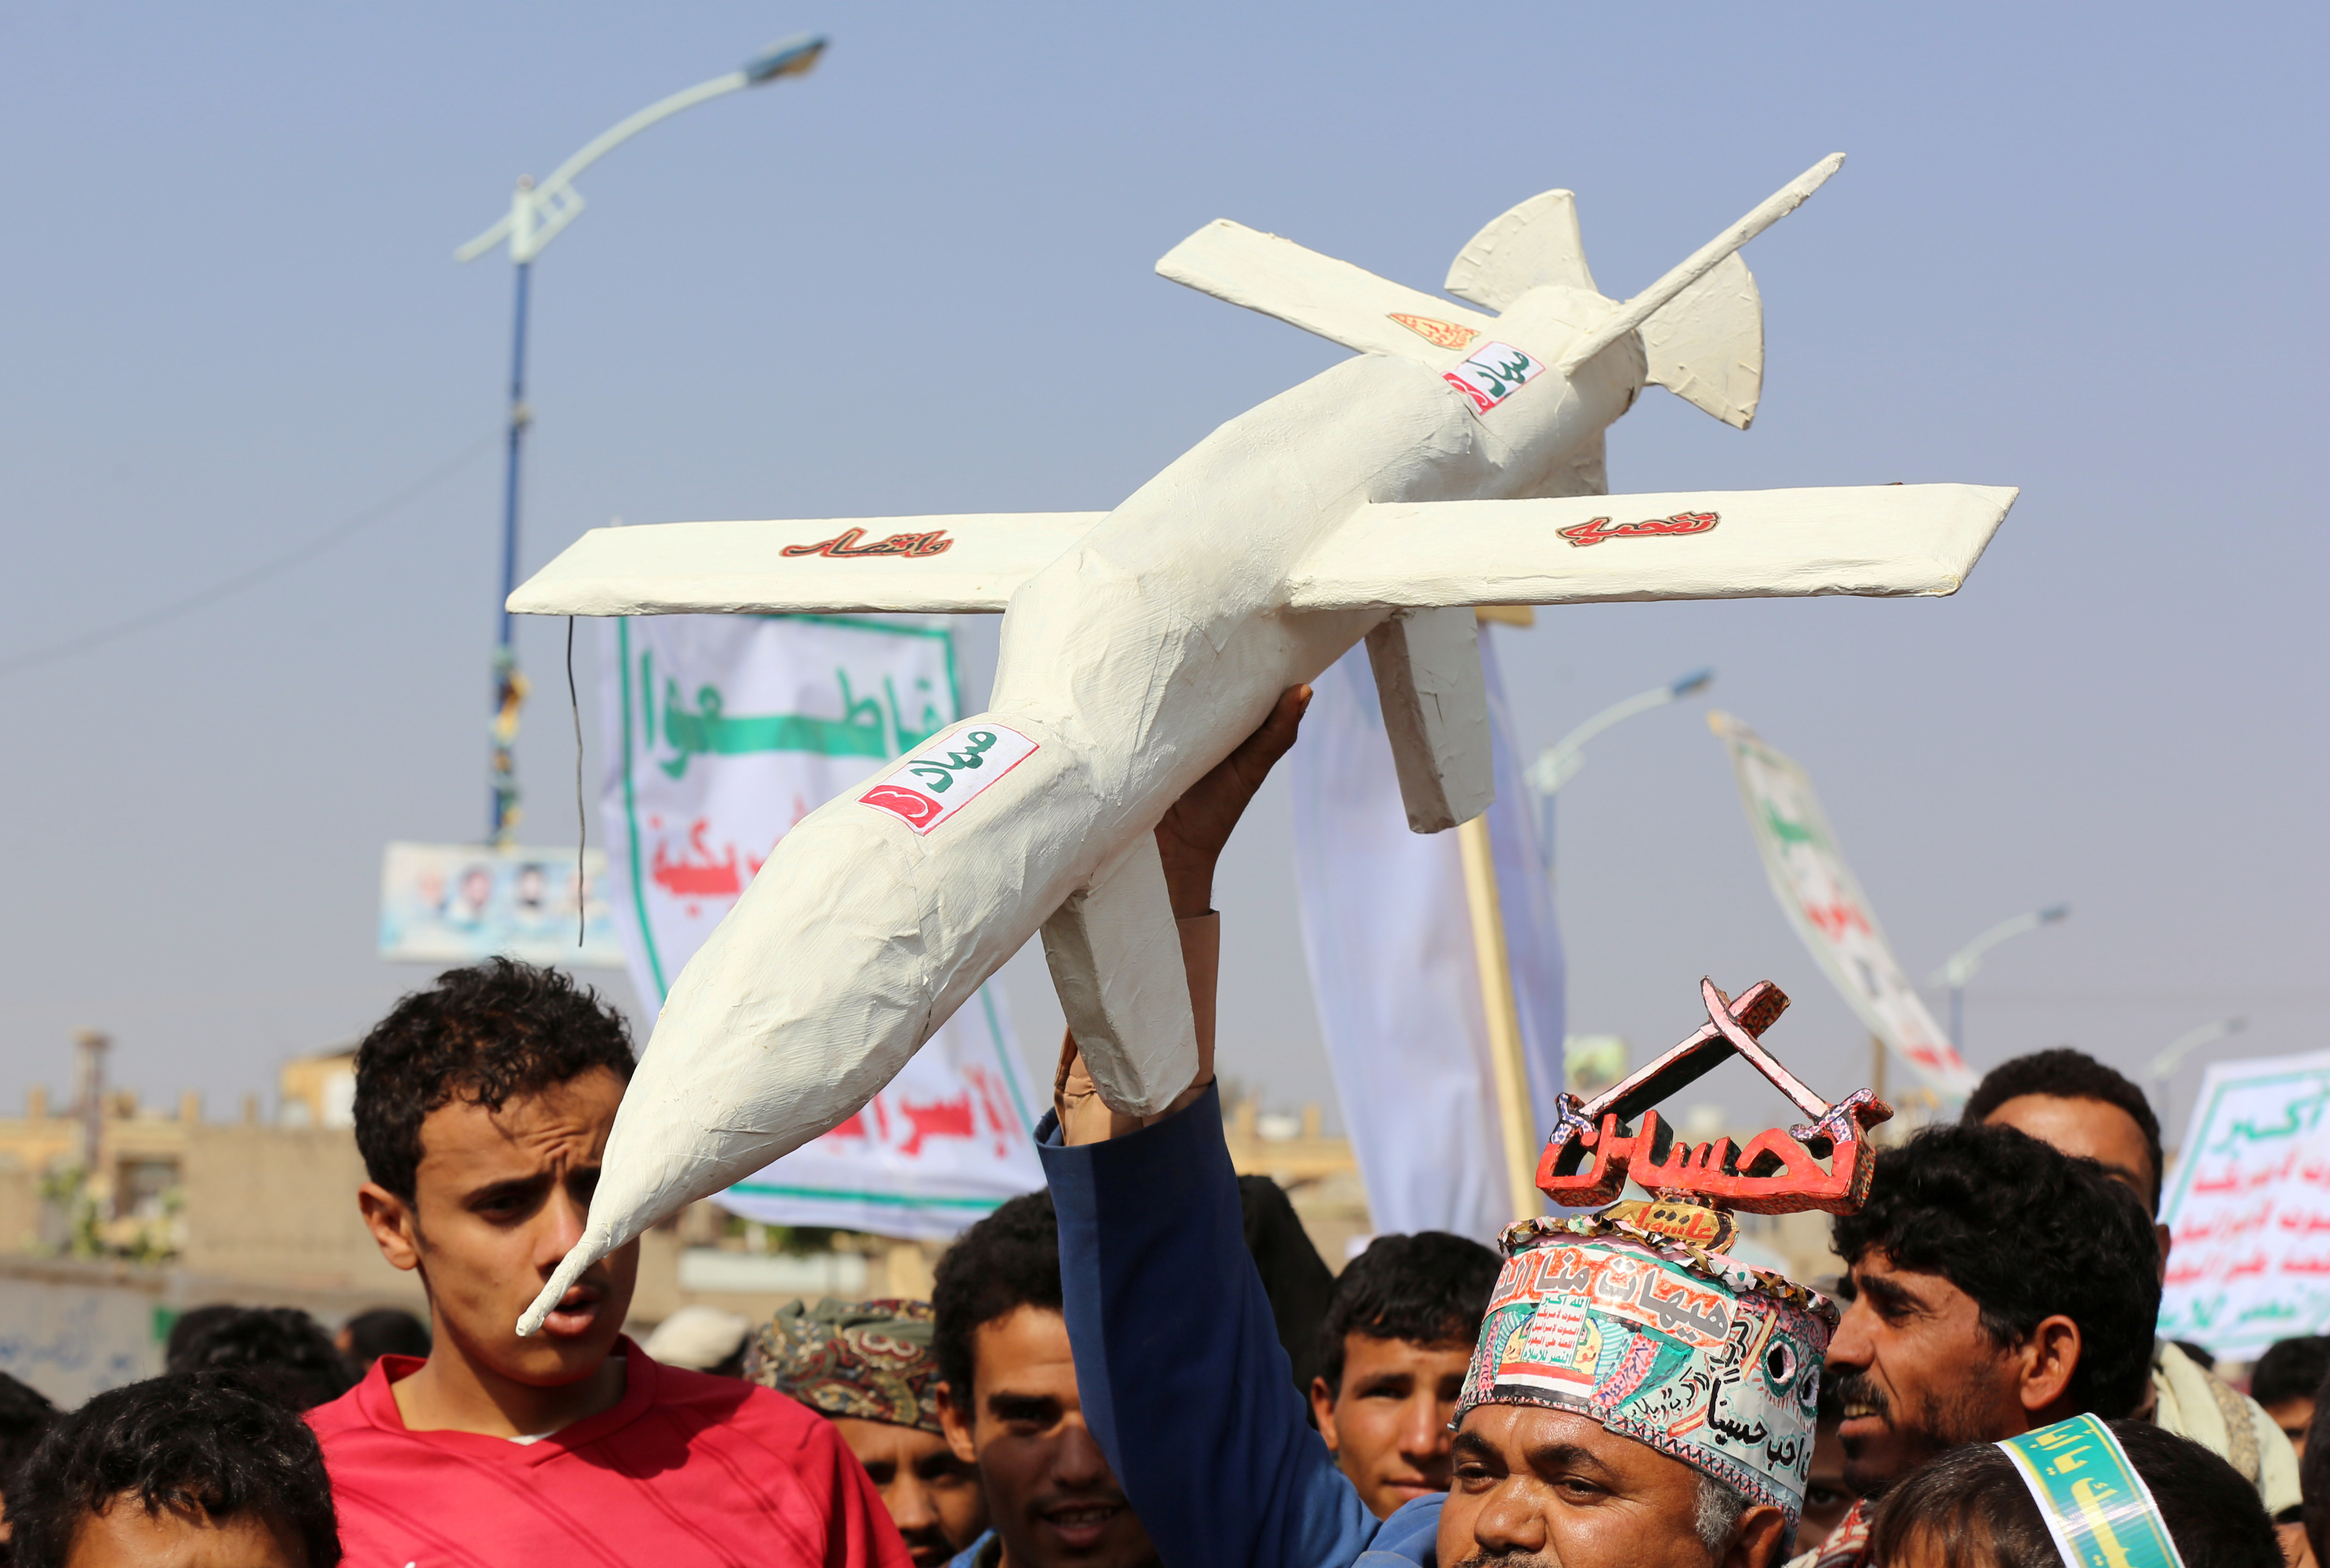 e door Iran gesteunde Houthi-rebellen in Jemen hebben de verantwoordelijkheid opgeëist voor aanvallen op Saudische olie-installaties. Die zouden zijn uitgevoerd met drones.